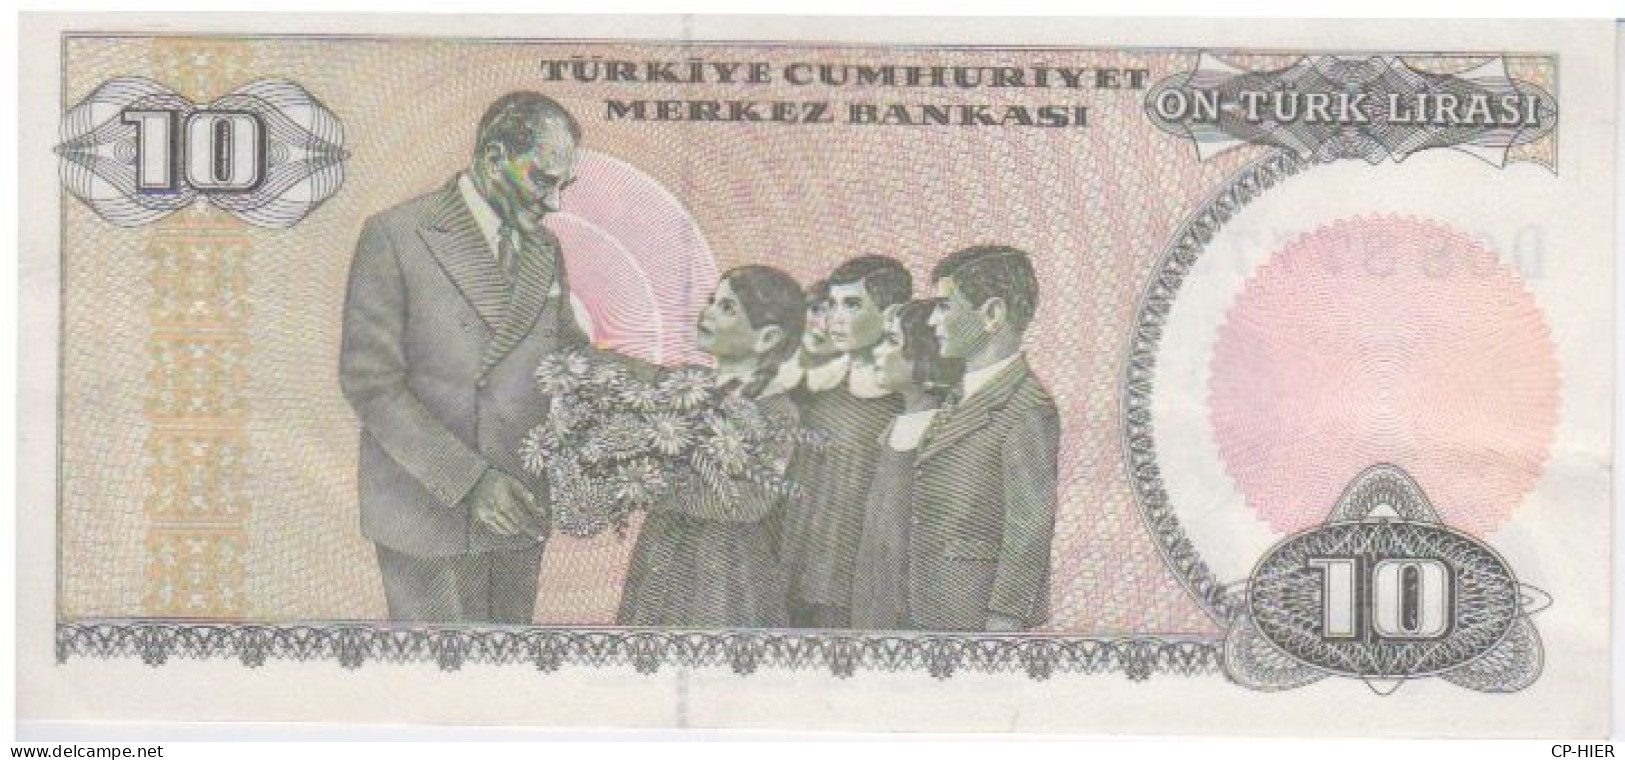 BILLET TURC - TURQUIE - TÜRKIYE -  ON TURK LIRASI 10 - Turkije